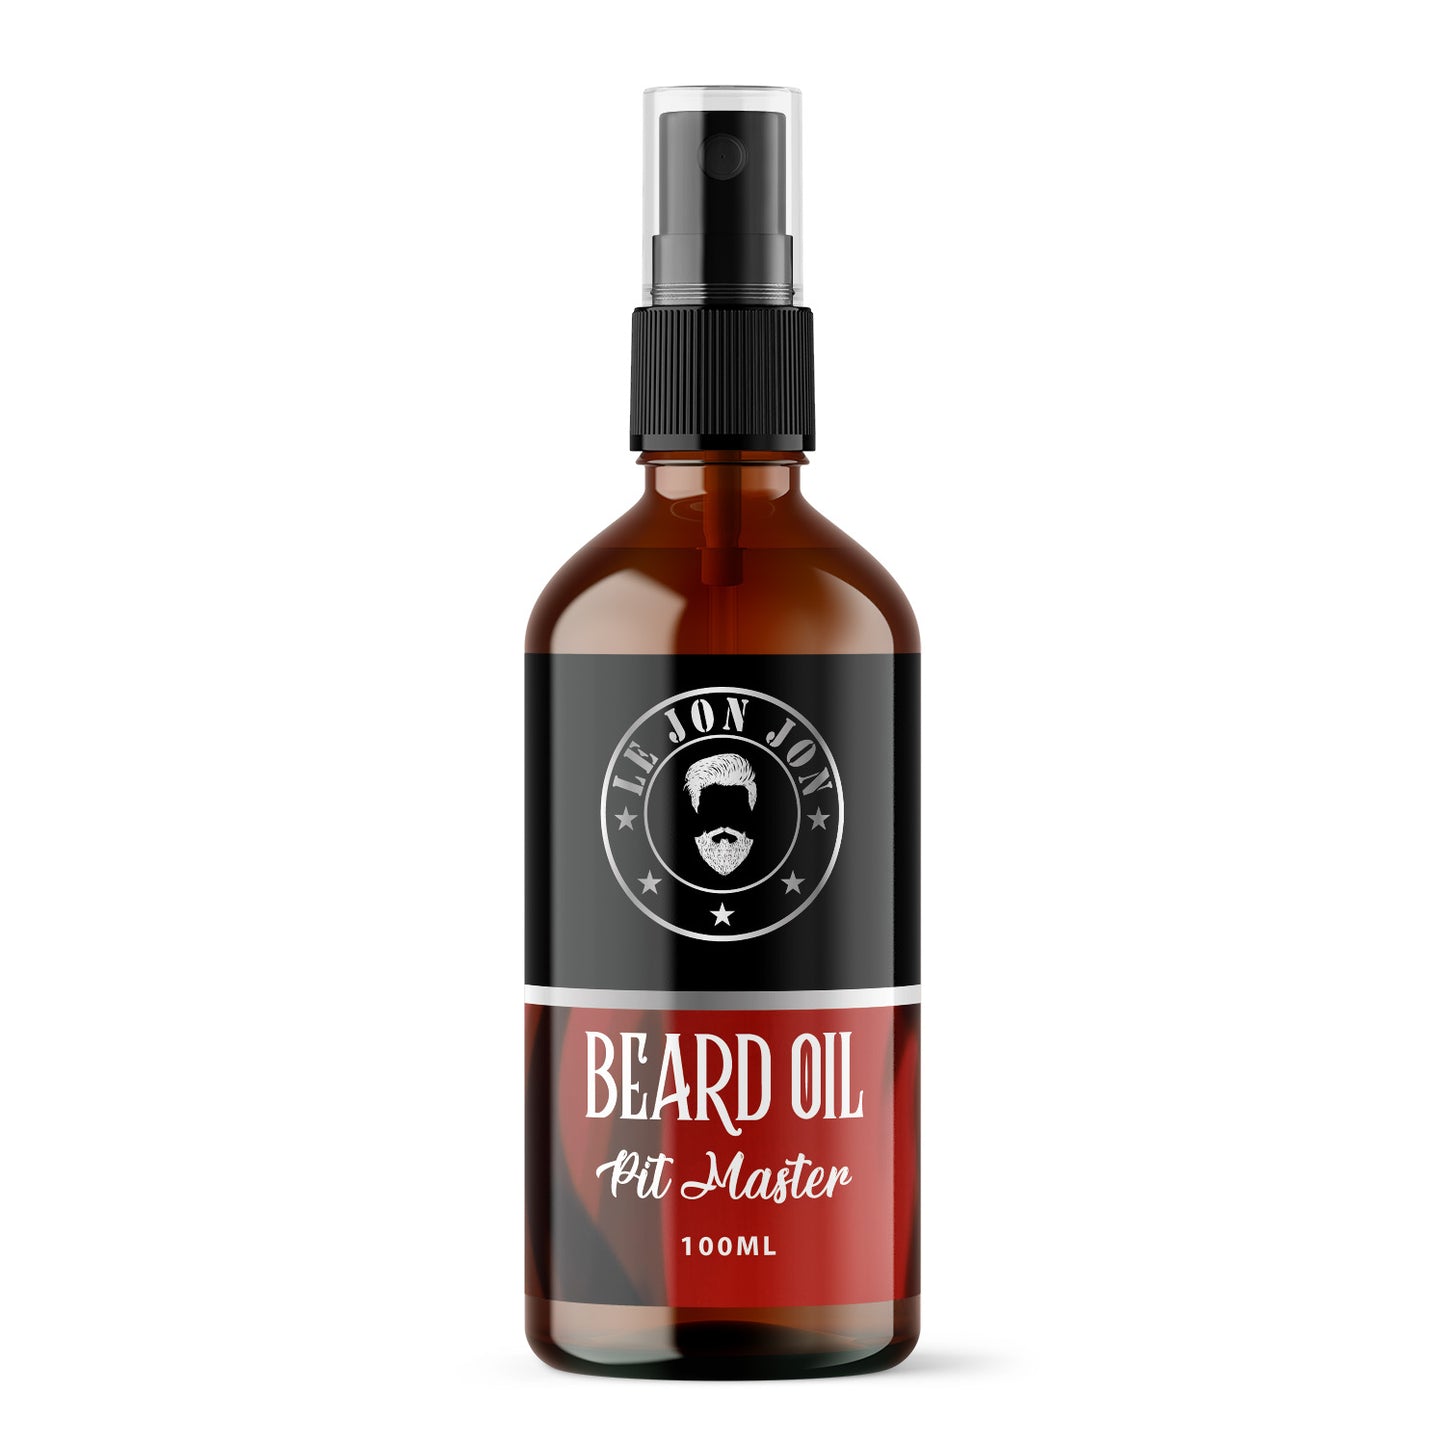 PitMaster 100ml bottle of beard oil